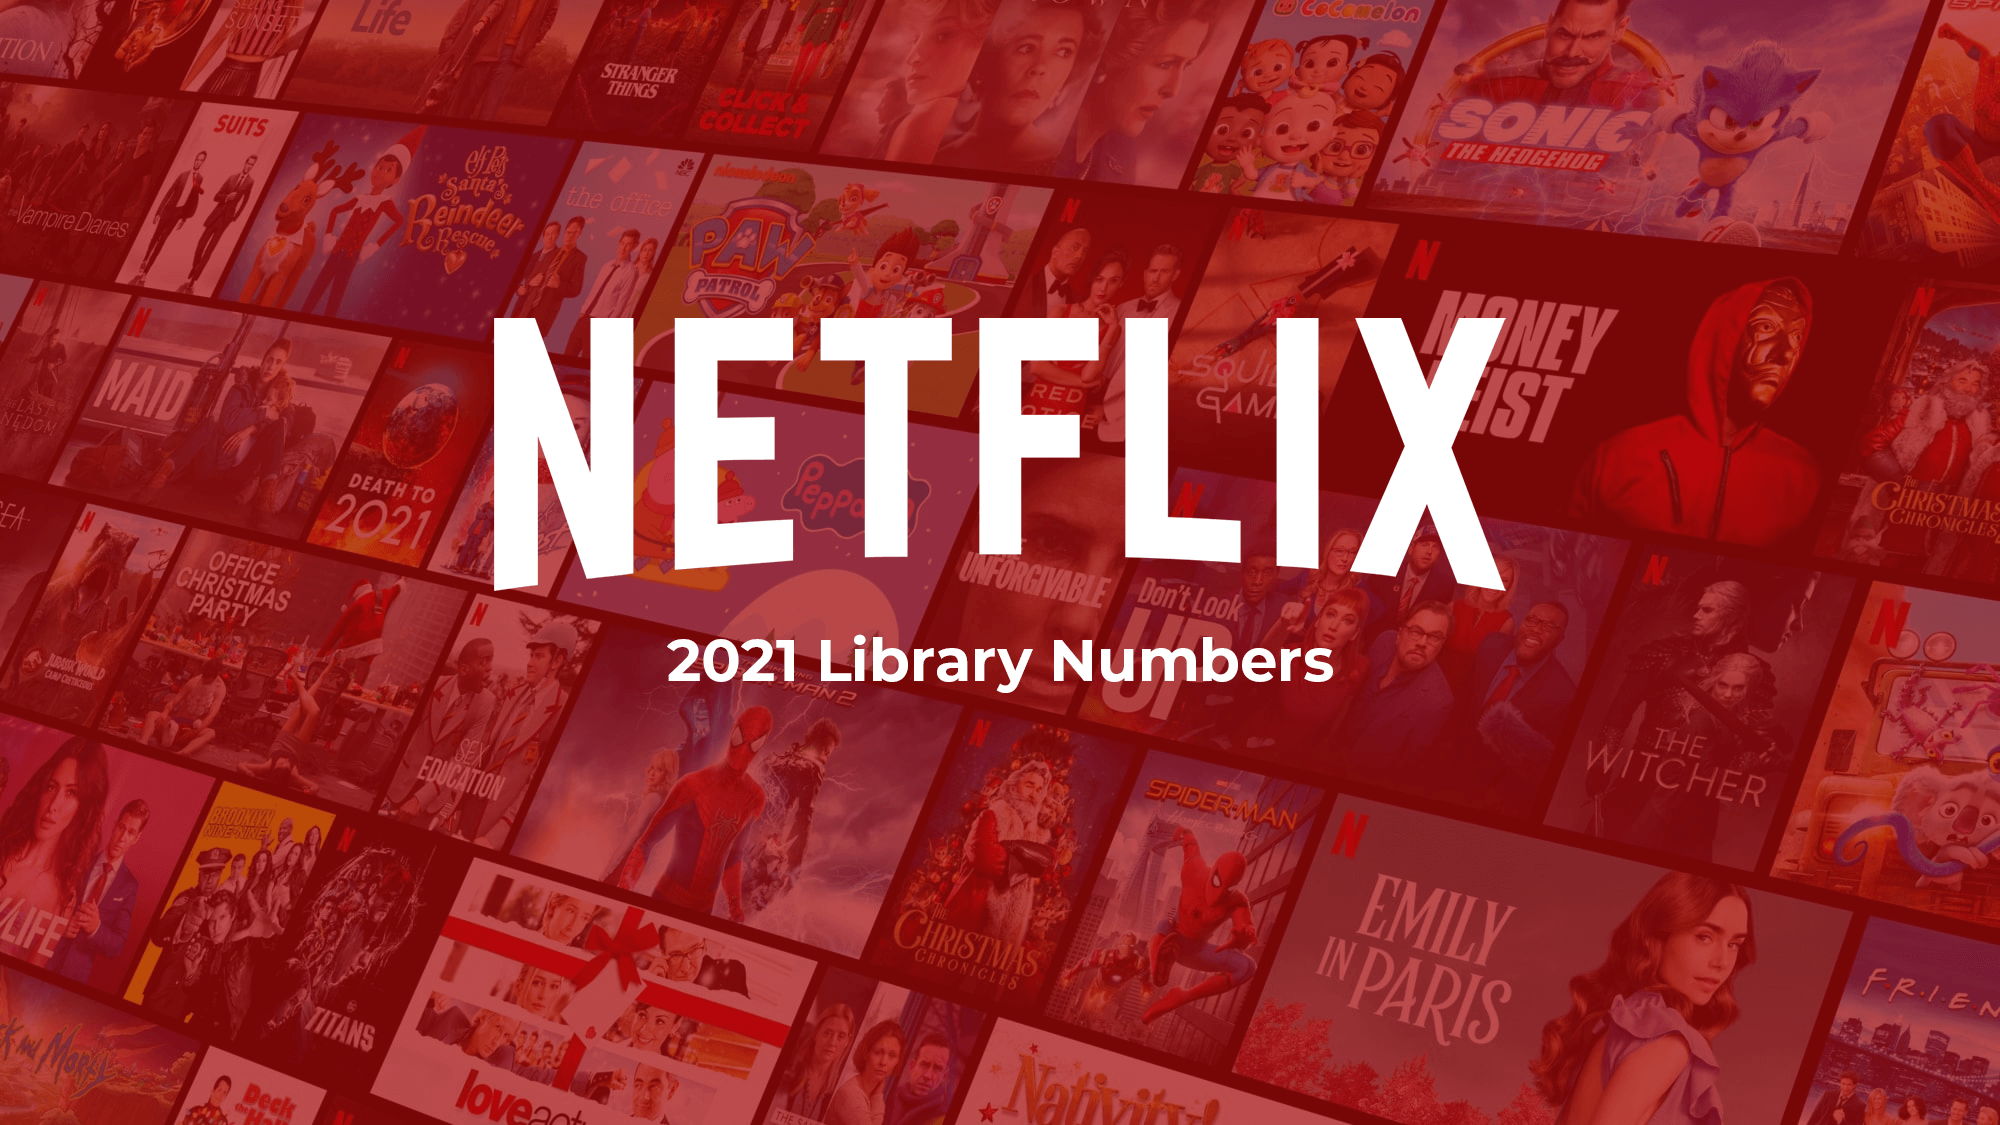 Biblioteca de Netflix en cifras 2021